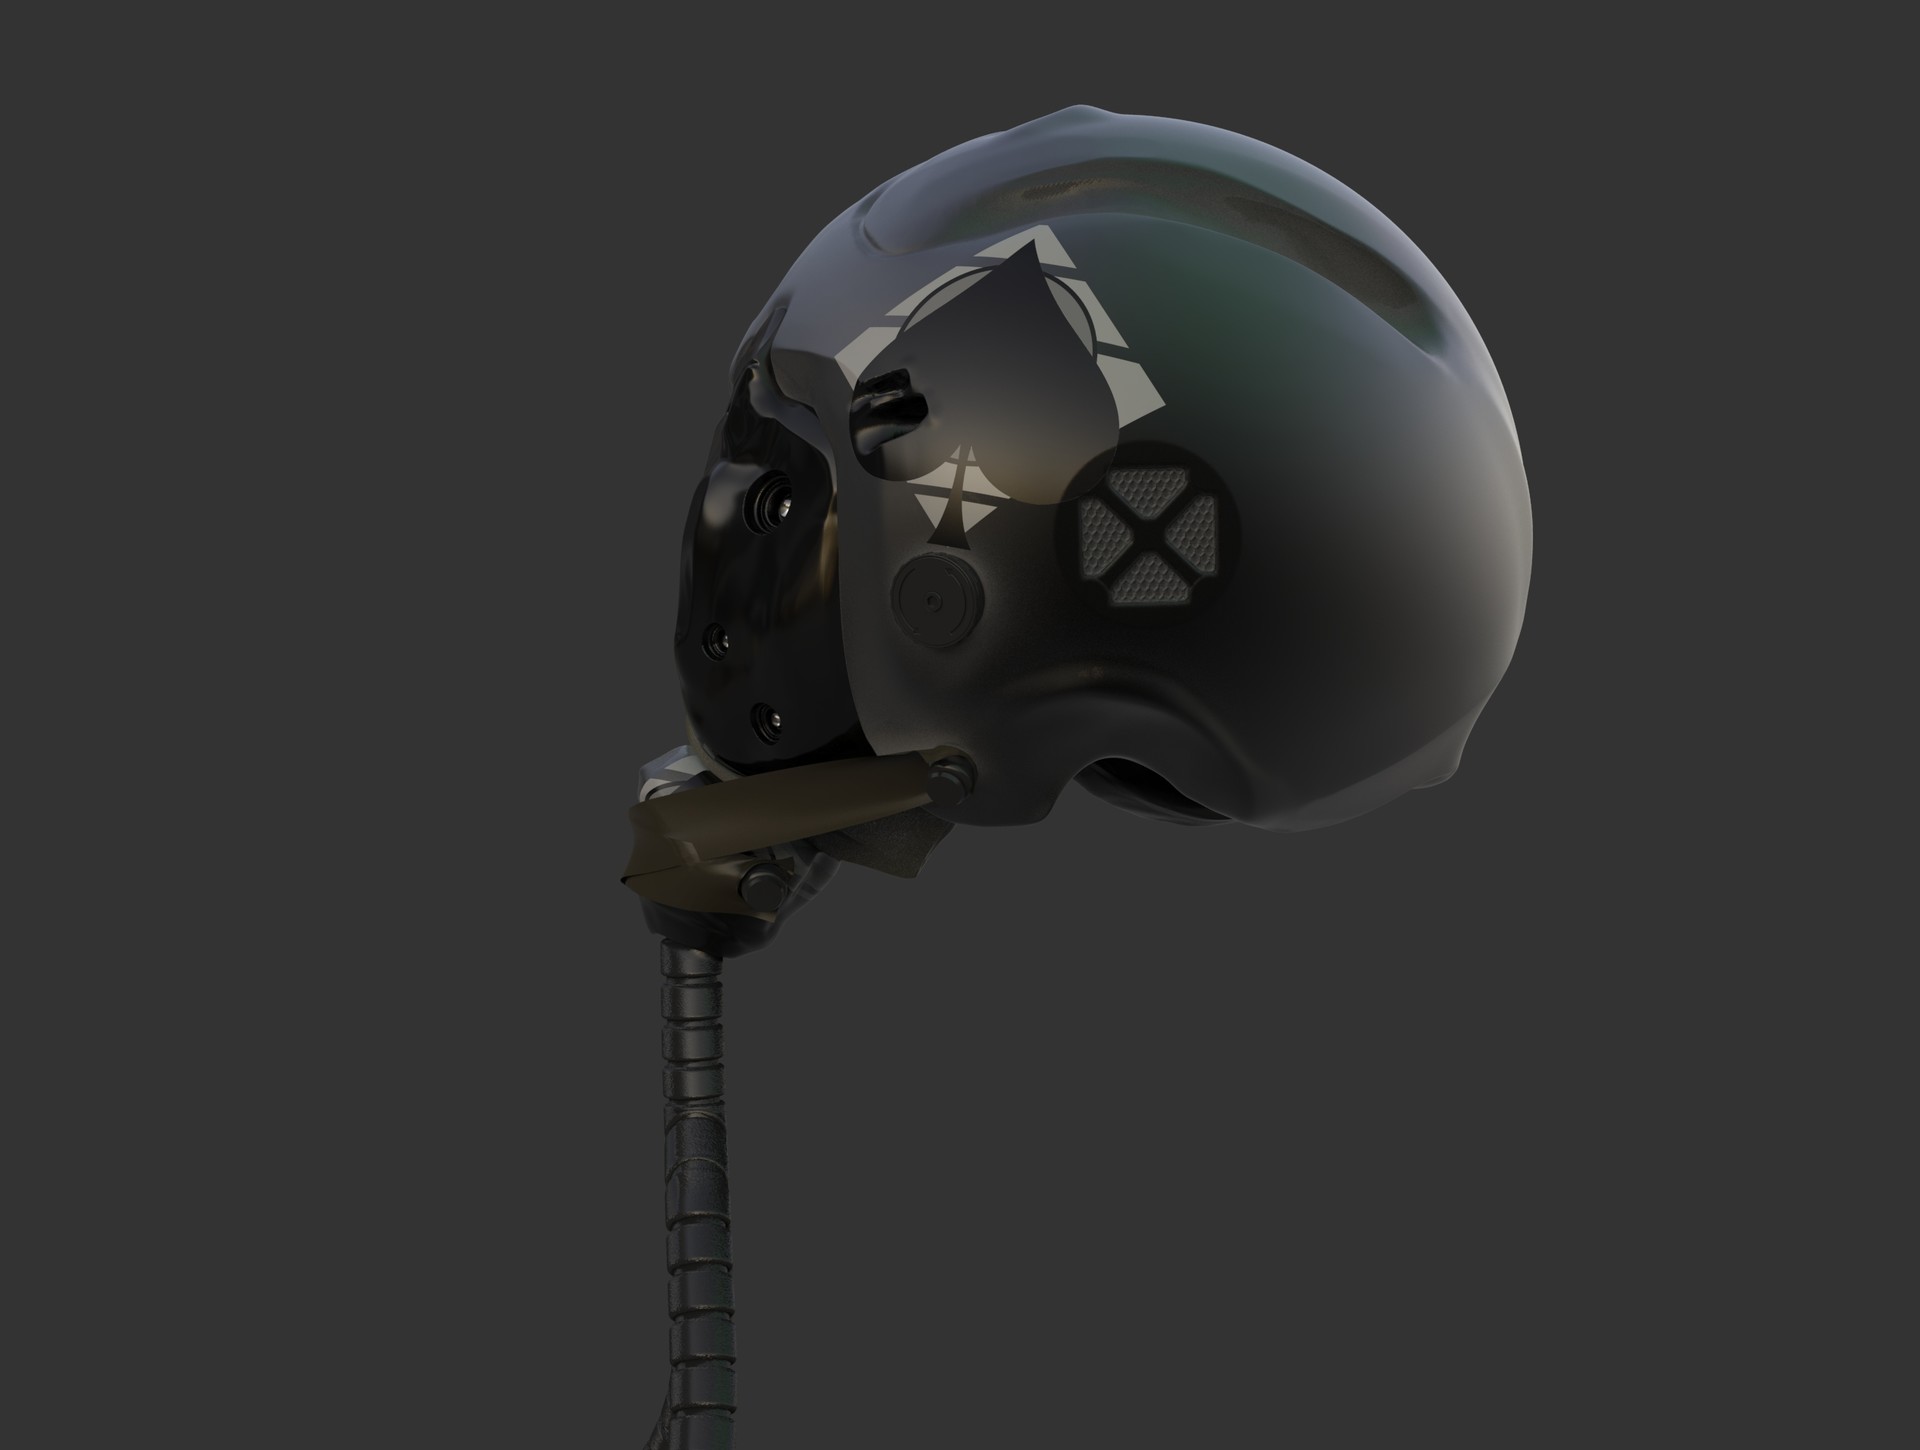 ArtStation - Futuristic Pilot Helmet, Orestis Iliopoulos